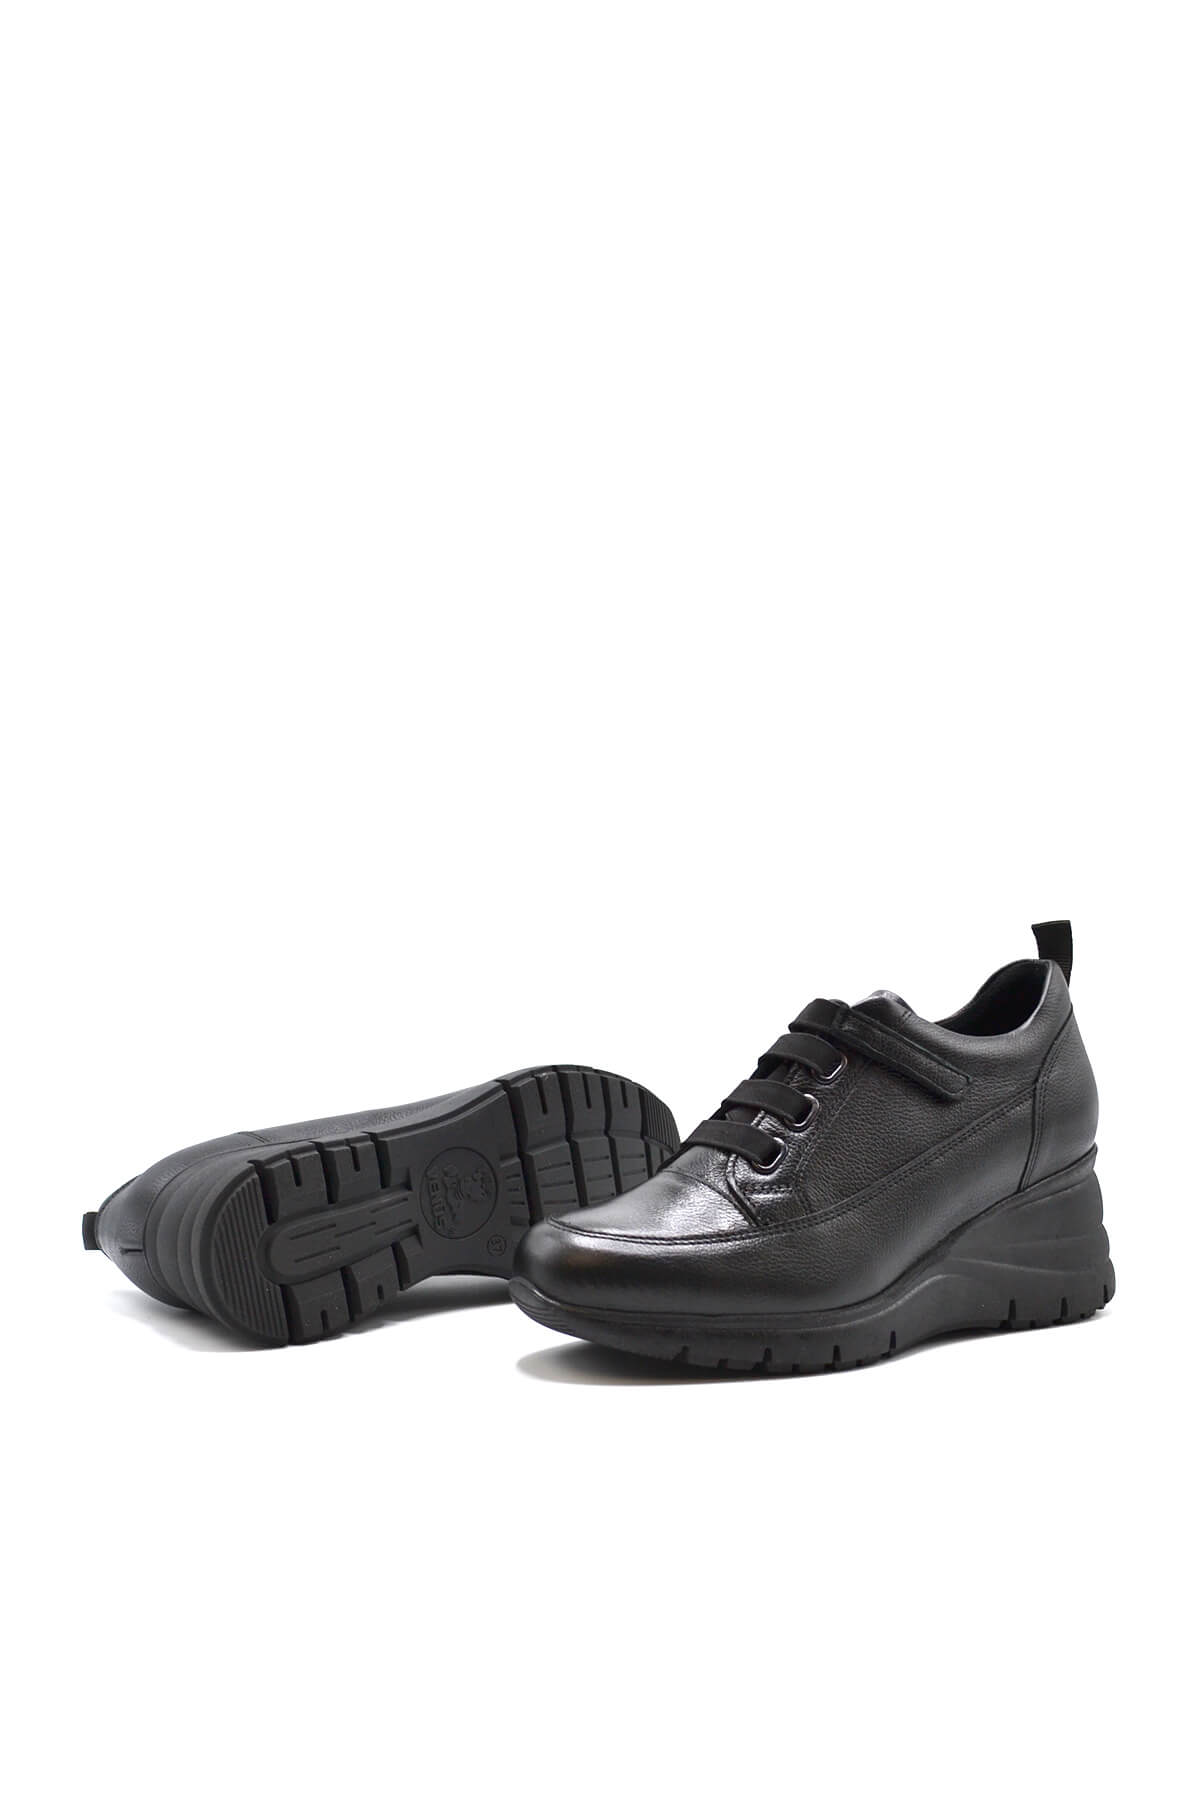 Kadın Dolgu Topuk Deri Ayakkabı Siyah 2252505K - Thumbnail